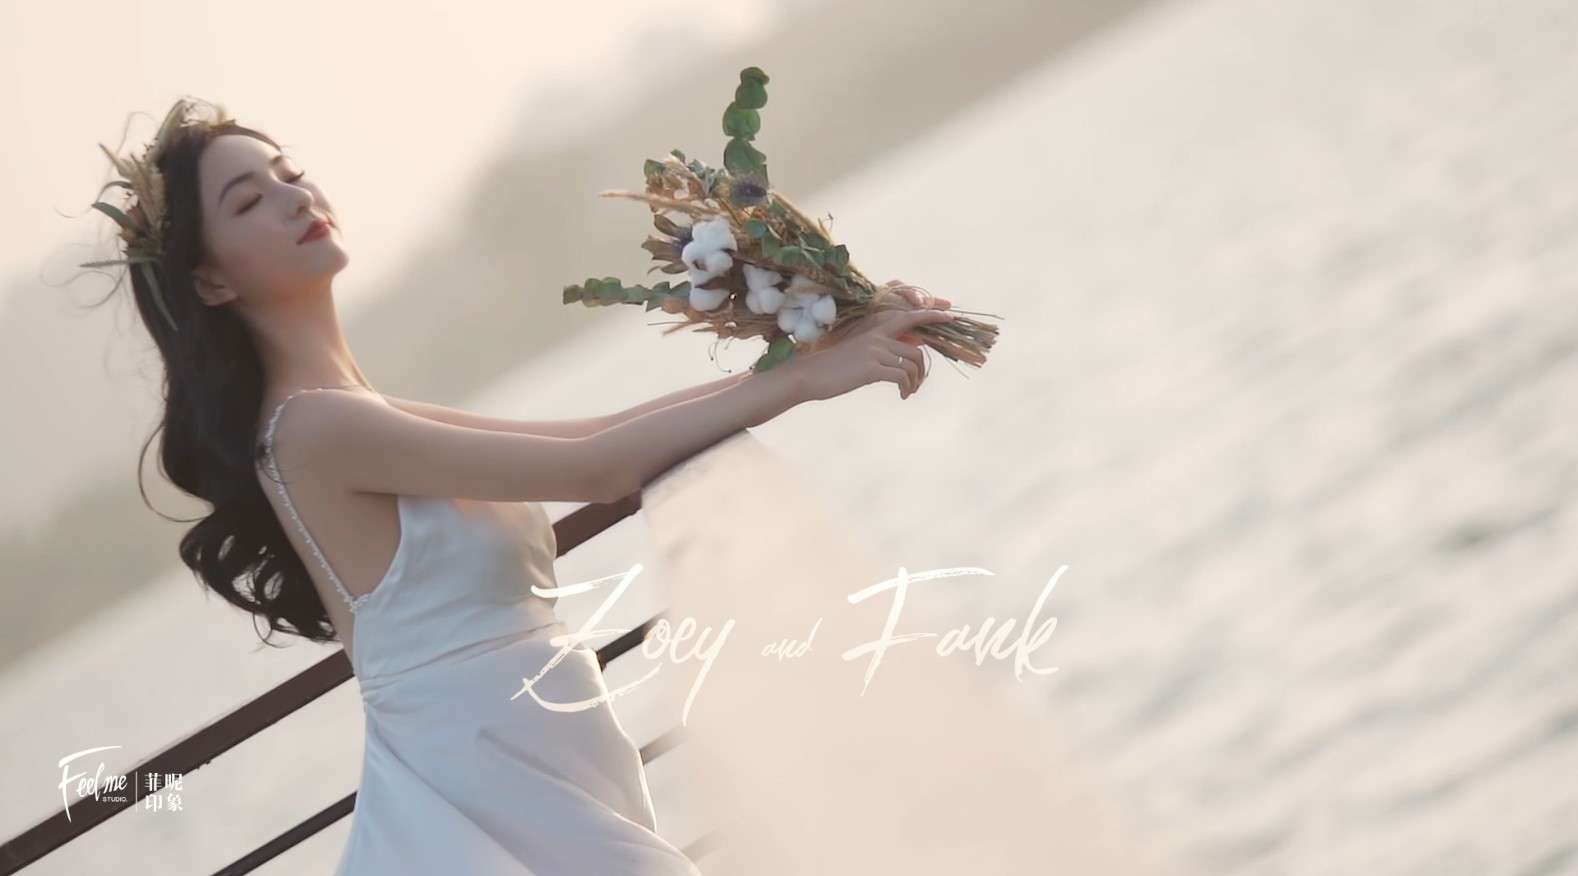 Zoey&Fank|安徽|婚礼快剪|菲昵印象出品